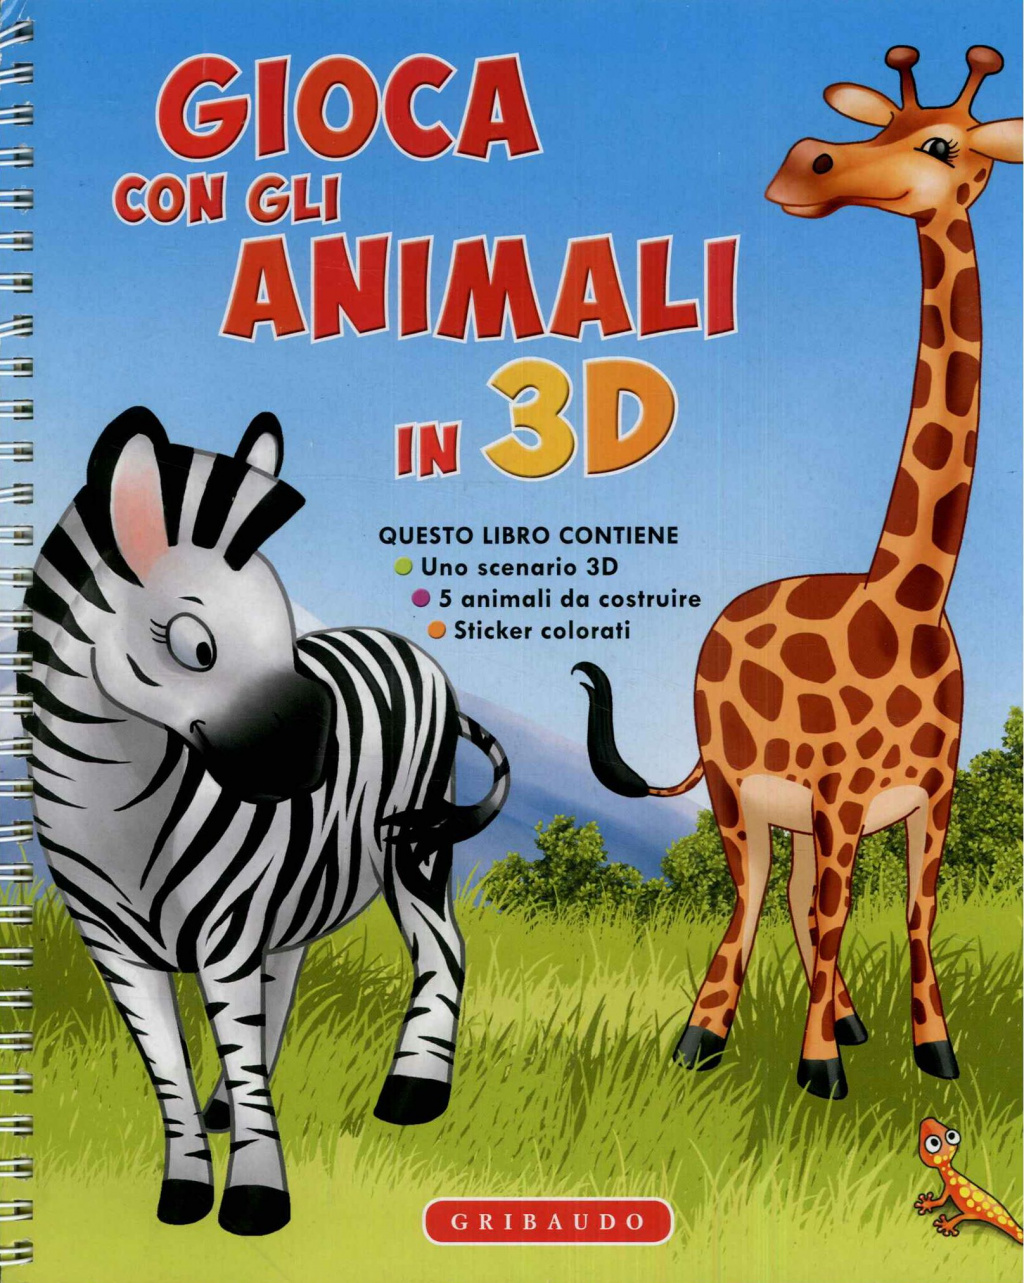 Gioca con gli animali in 3D